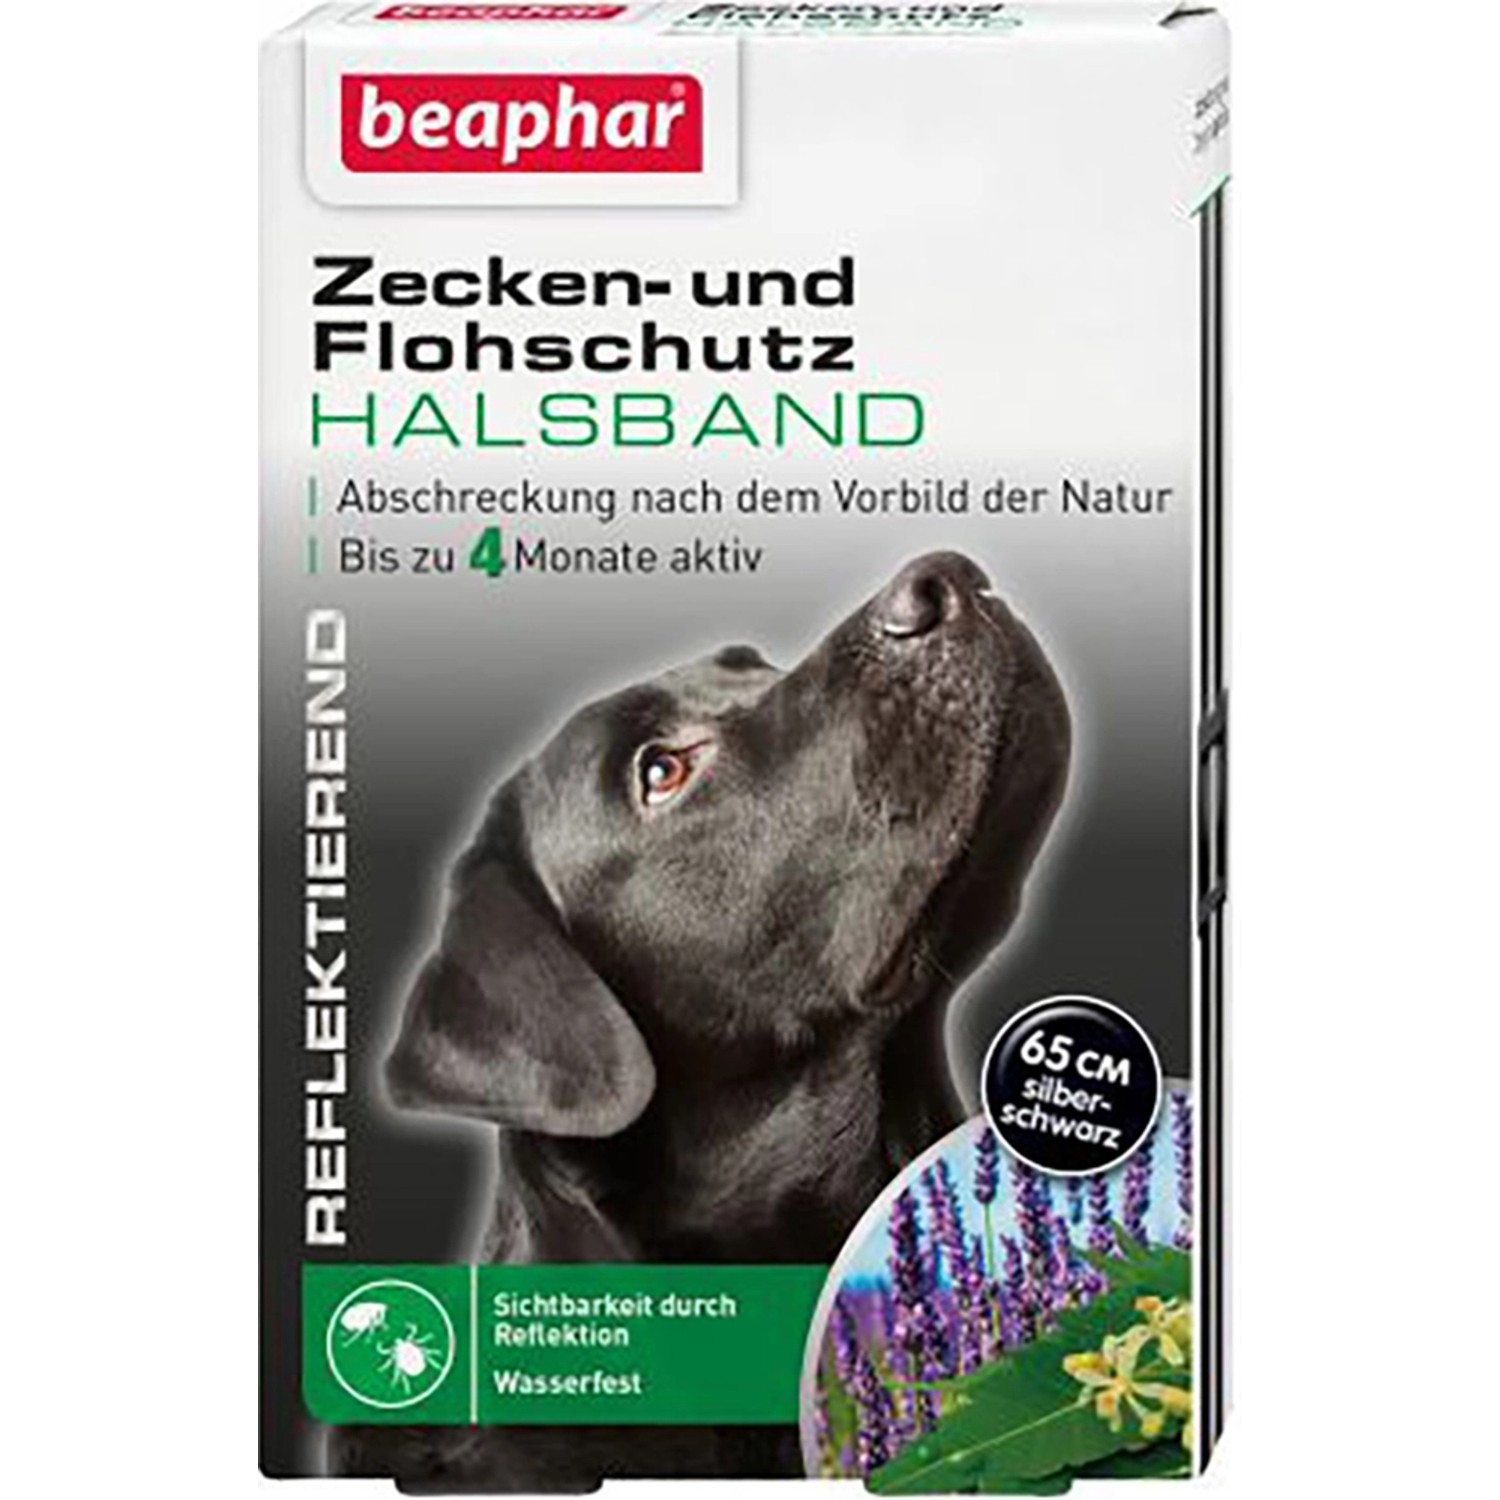 Beaphar Zecken- und Flohschutz Halsband für Hunde Reflektierend